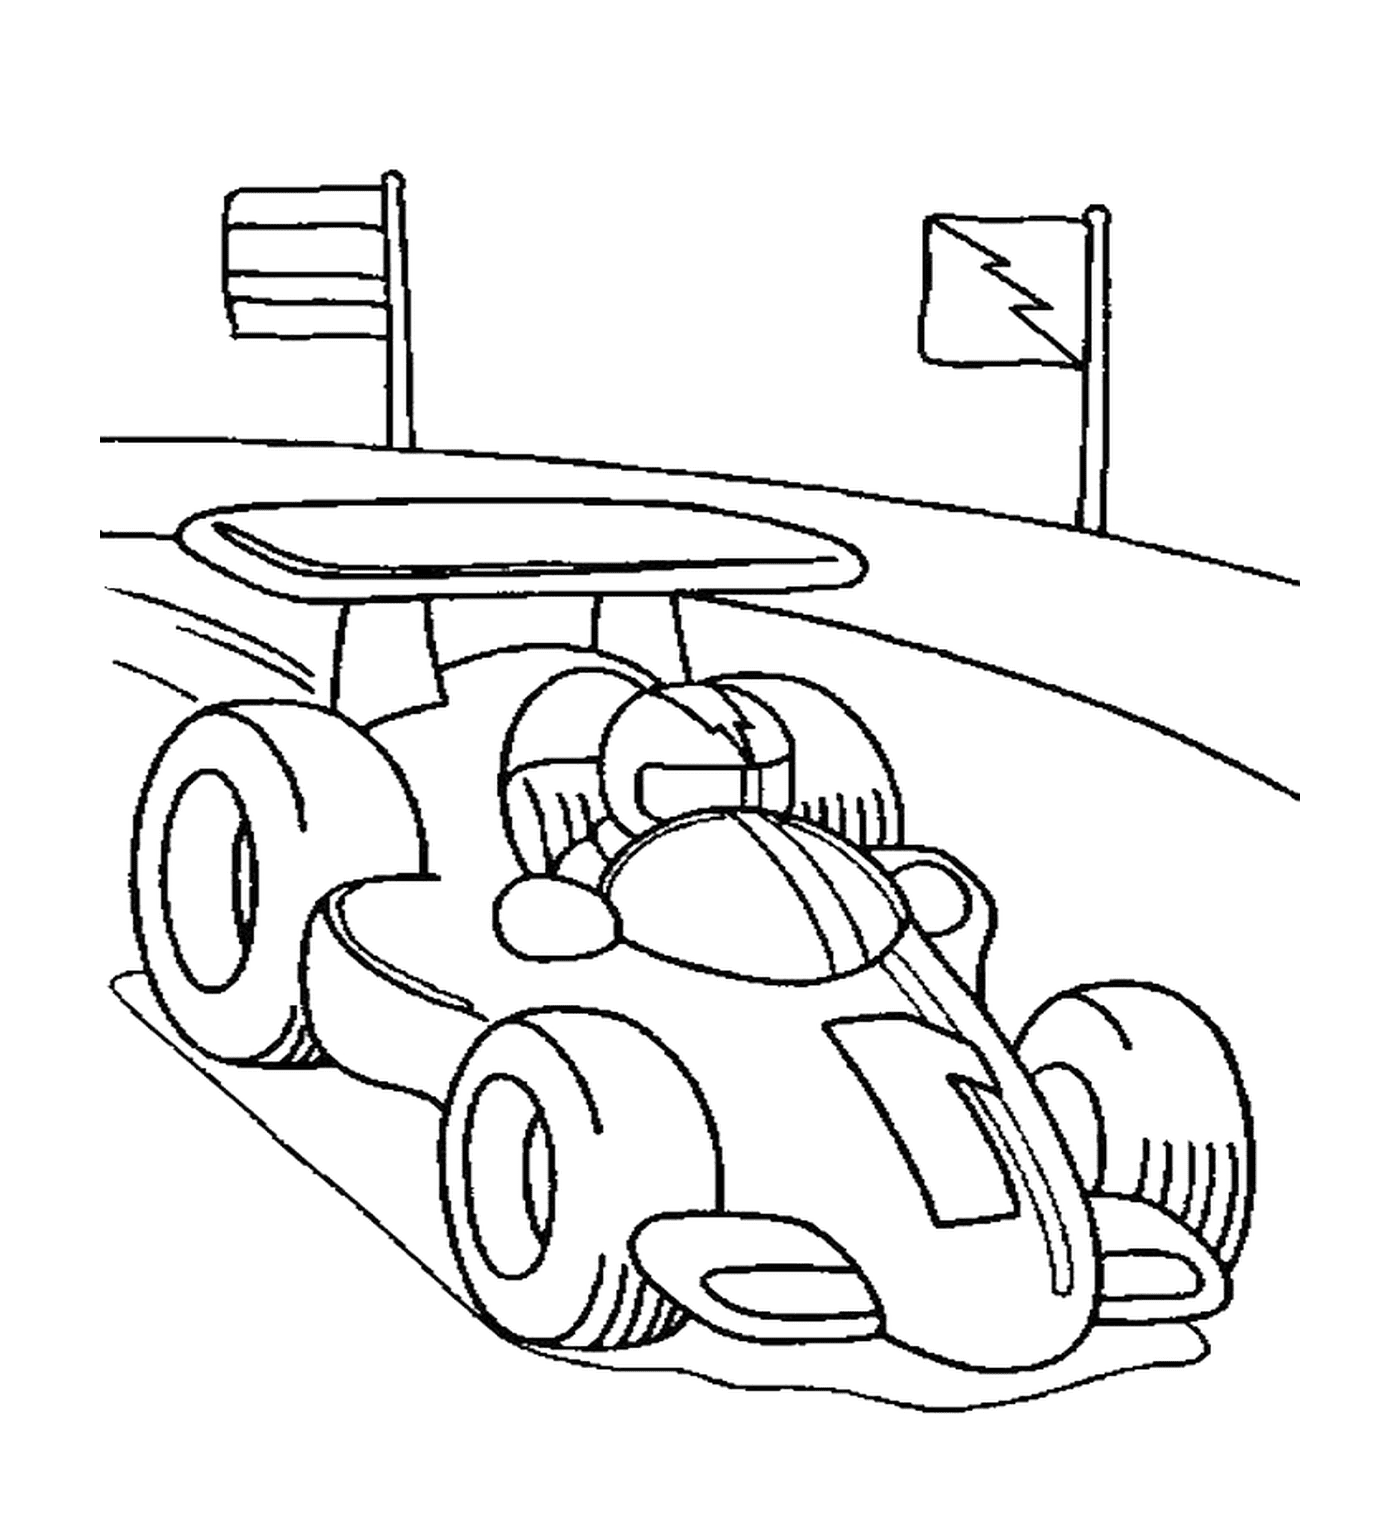   Pilote de voiture de Formule 1 